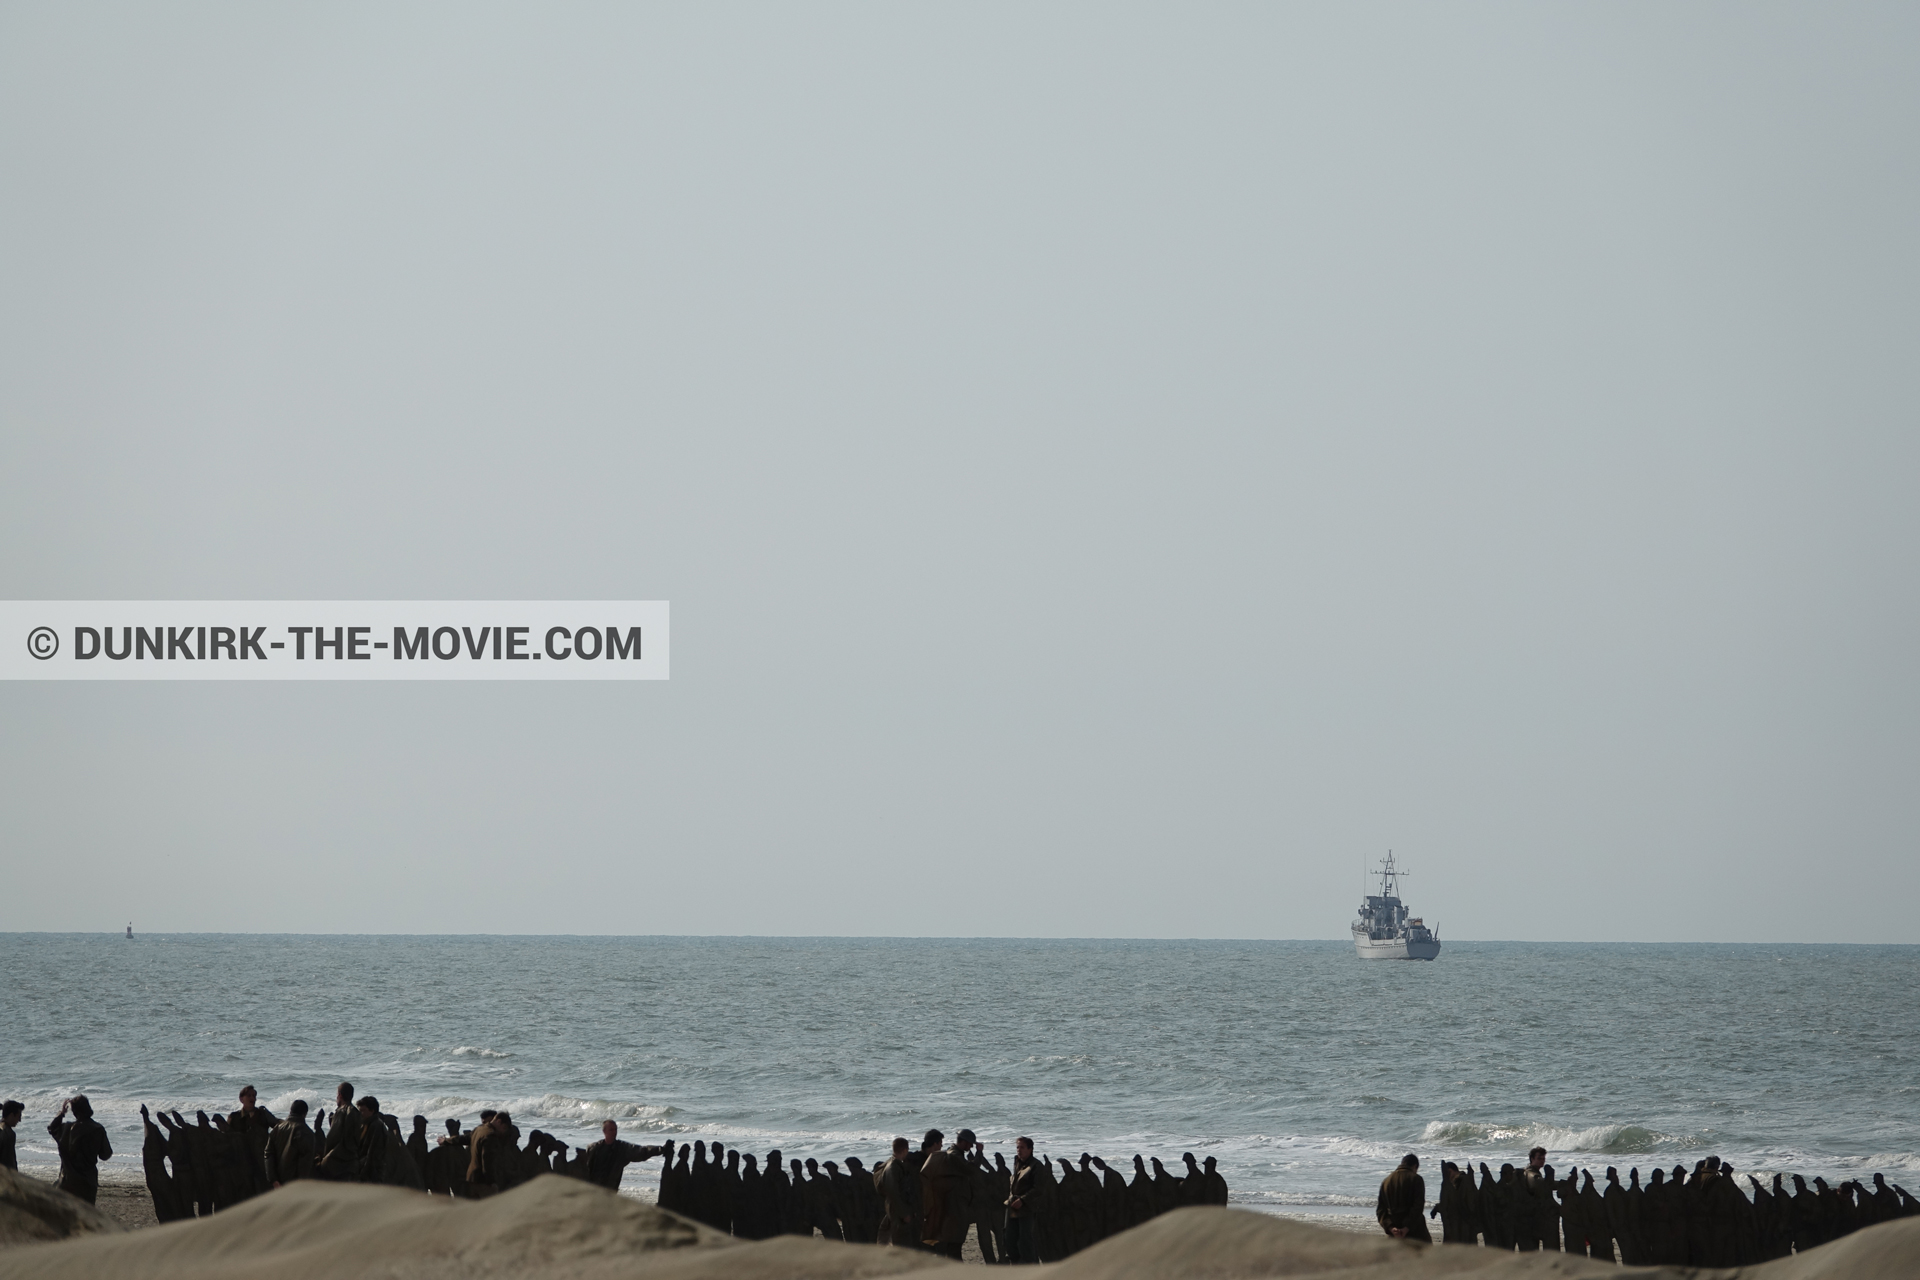 Fotos con barco, decoración, extras, mares agitados, playa,  durante el rodaje de la película Dunkerque de Nolan